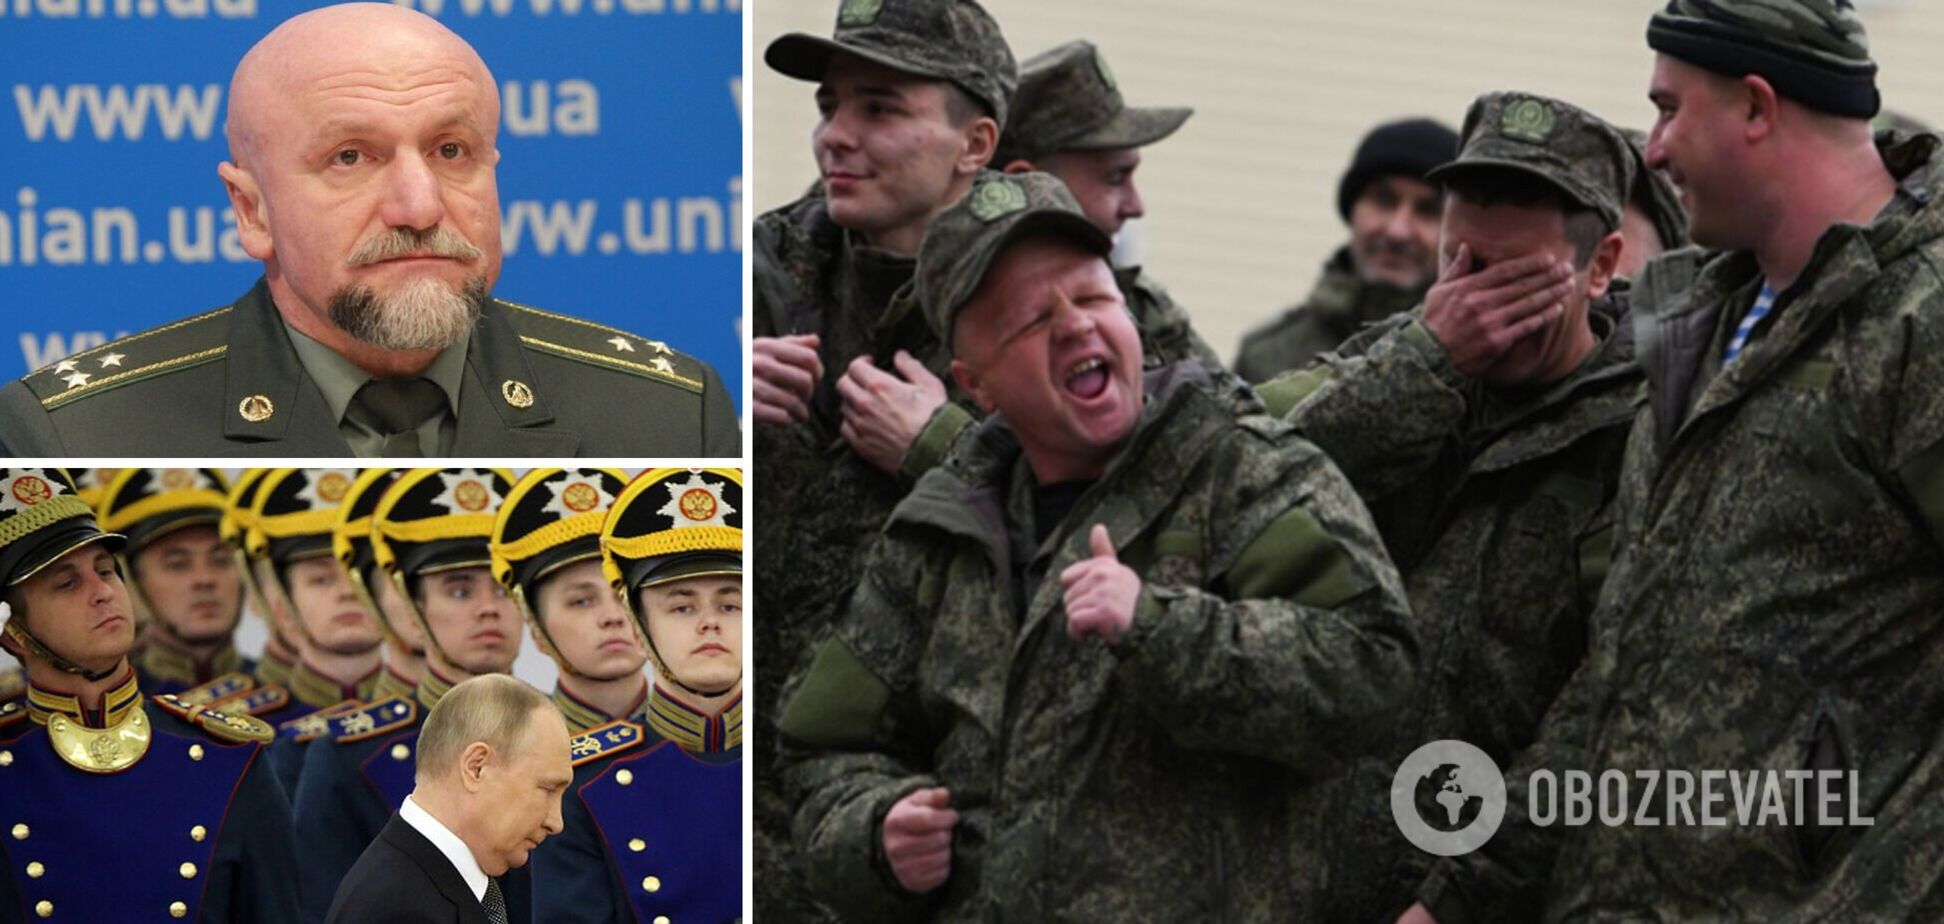 Полковник Недзельский: 'мобикам' дают наркотики, на Путина готовят покушение. Интервью